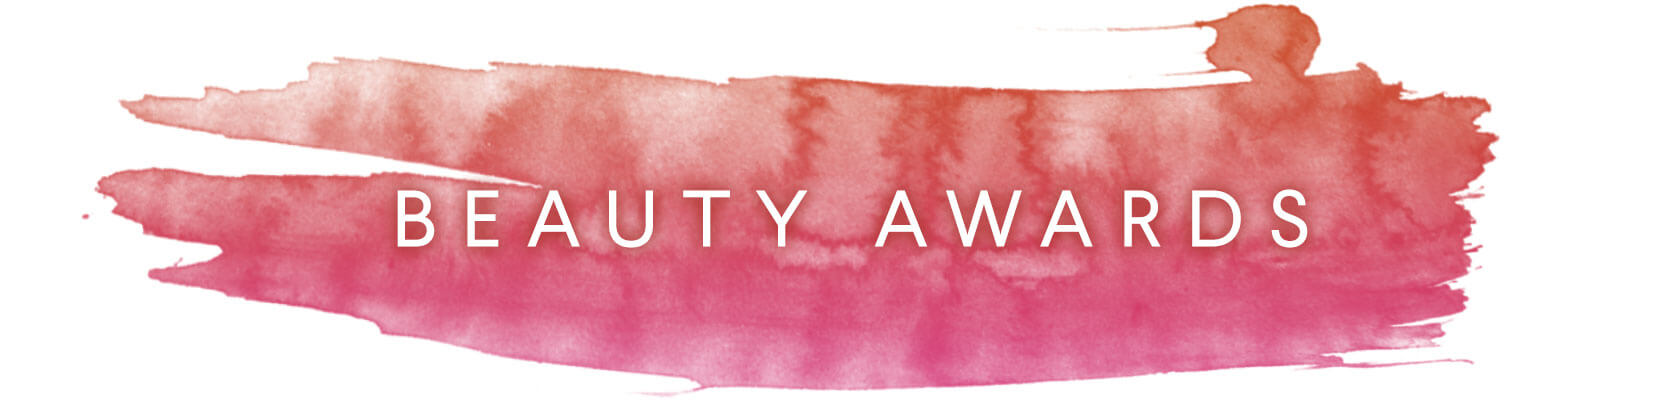 beauty-awards-header